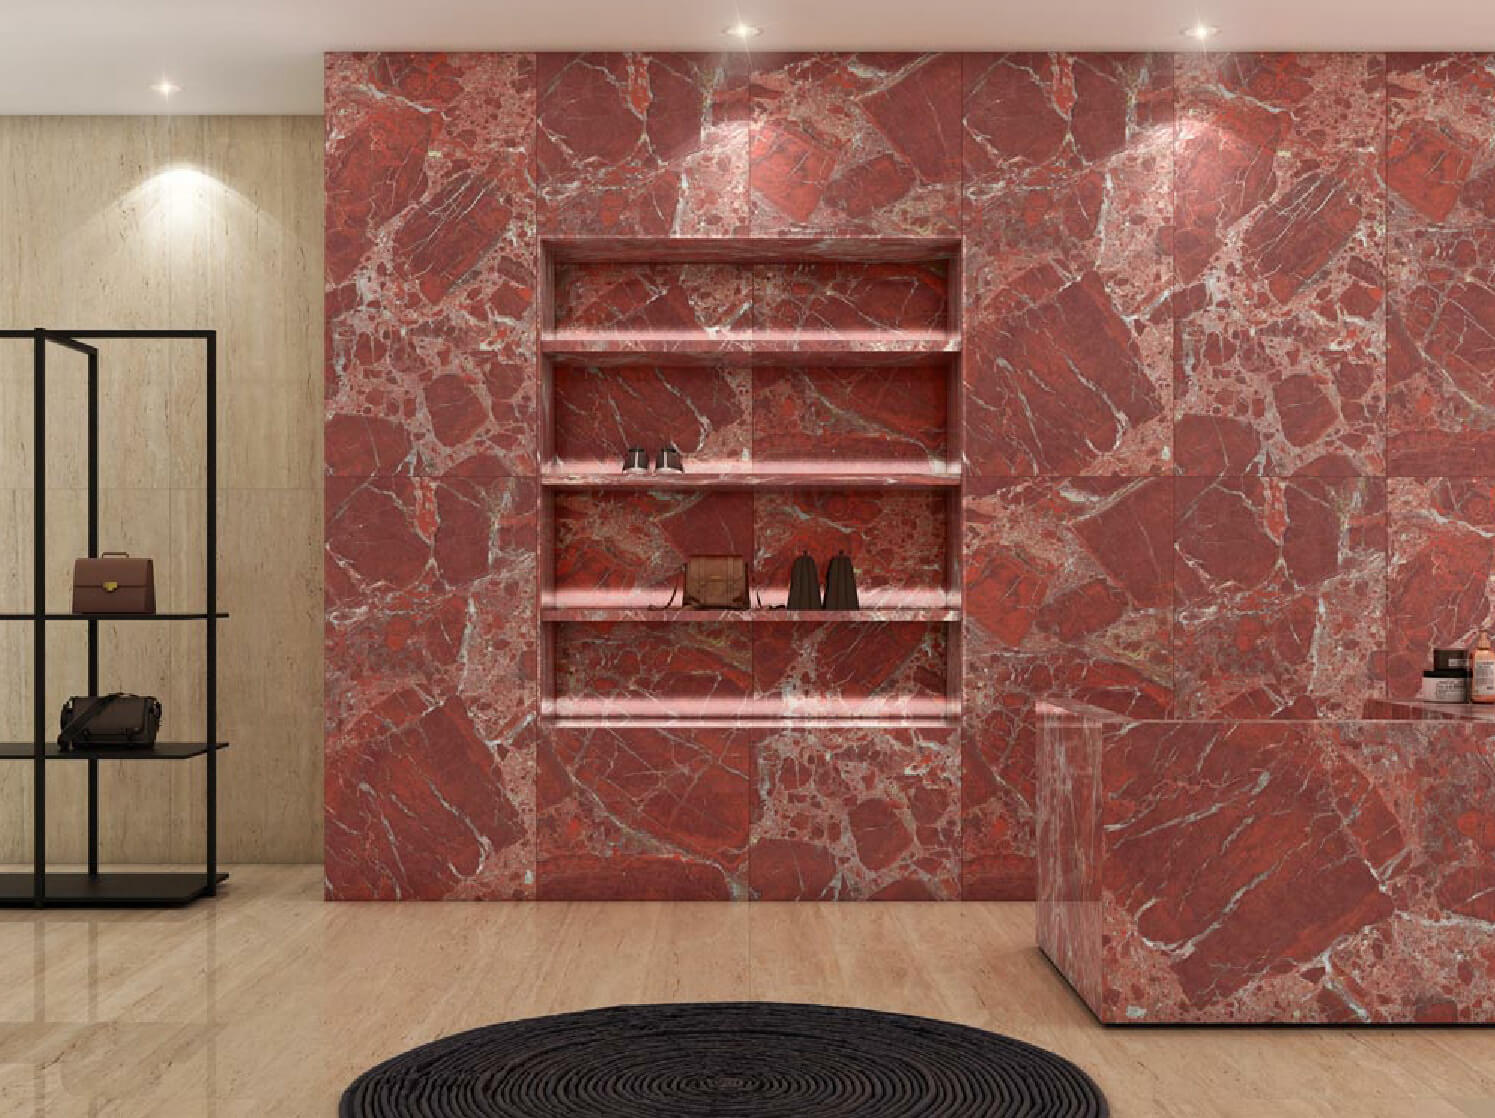 Torentio Red Rectified Wielkoformatowy egzotyczny efekt kamienia nawierzchniowego Porcelana 800x1600mm Płytki podłogowe i ścienne 